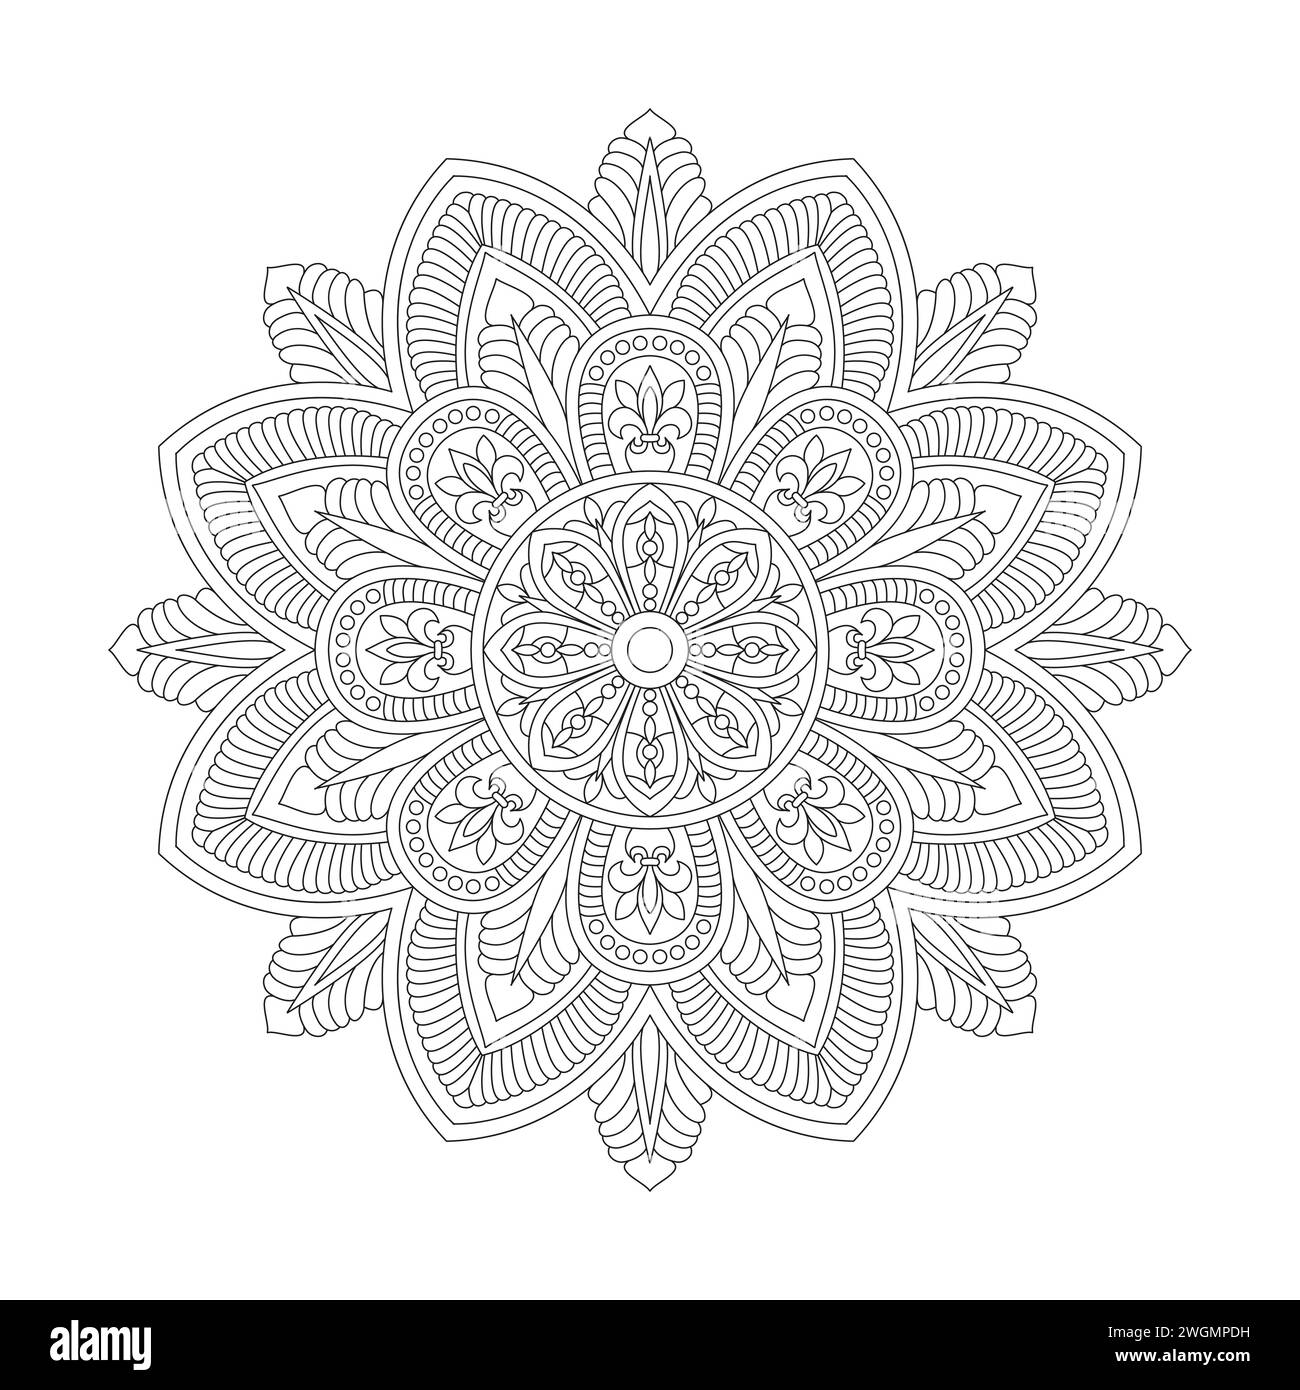 Belle page de livre de coloriage Floral Mandala pour l'intérieur du livre KDP. Pétales paisibles, capacité à se détendre, expériences cérébrales, Haven harmonieux, po paisible Illustration de Vecteur